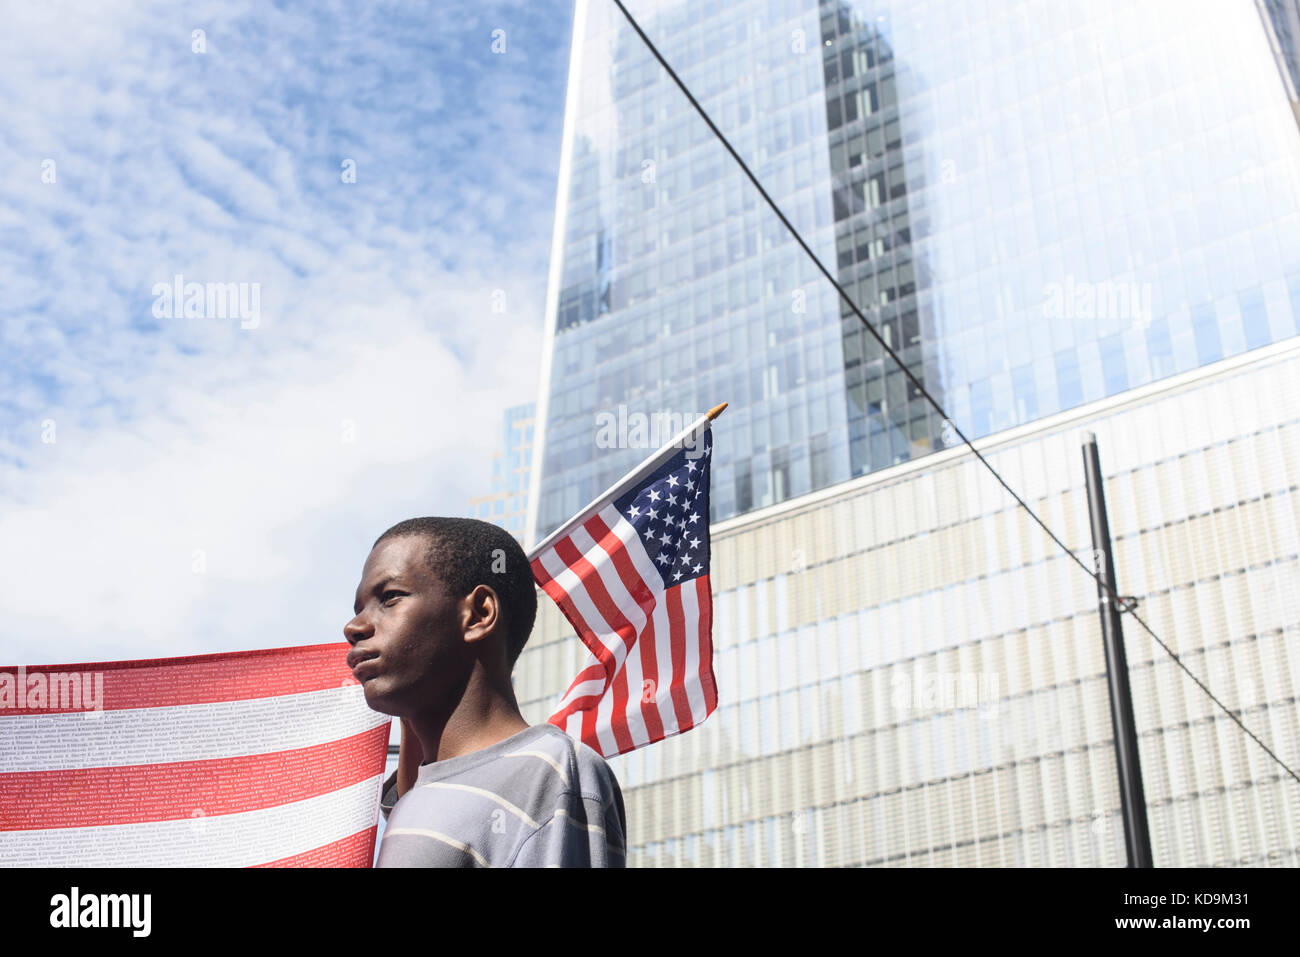 Un jeune américain tient un drapeau pour la commémoration des attentats du 9-11. Toutes les victimes seront écrites sur le drapeau. Le 16 septembre 20 Stock Photo